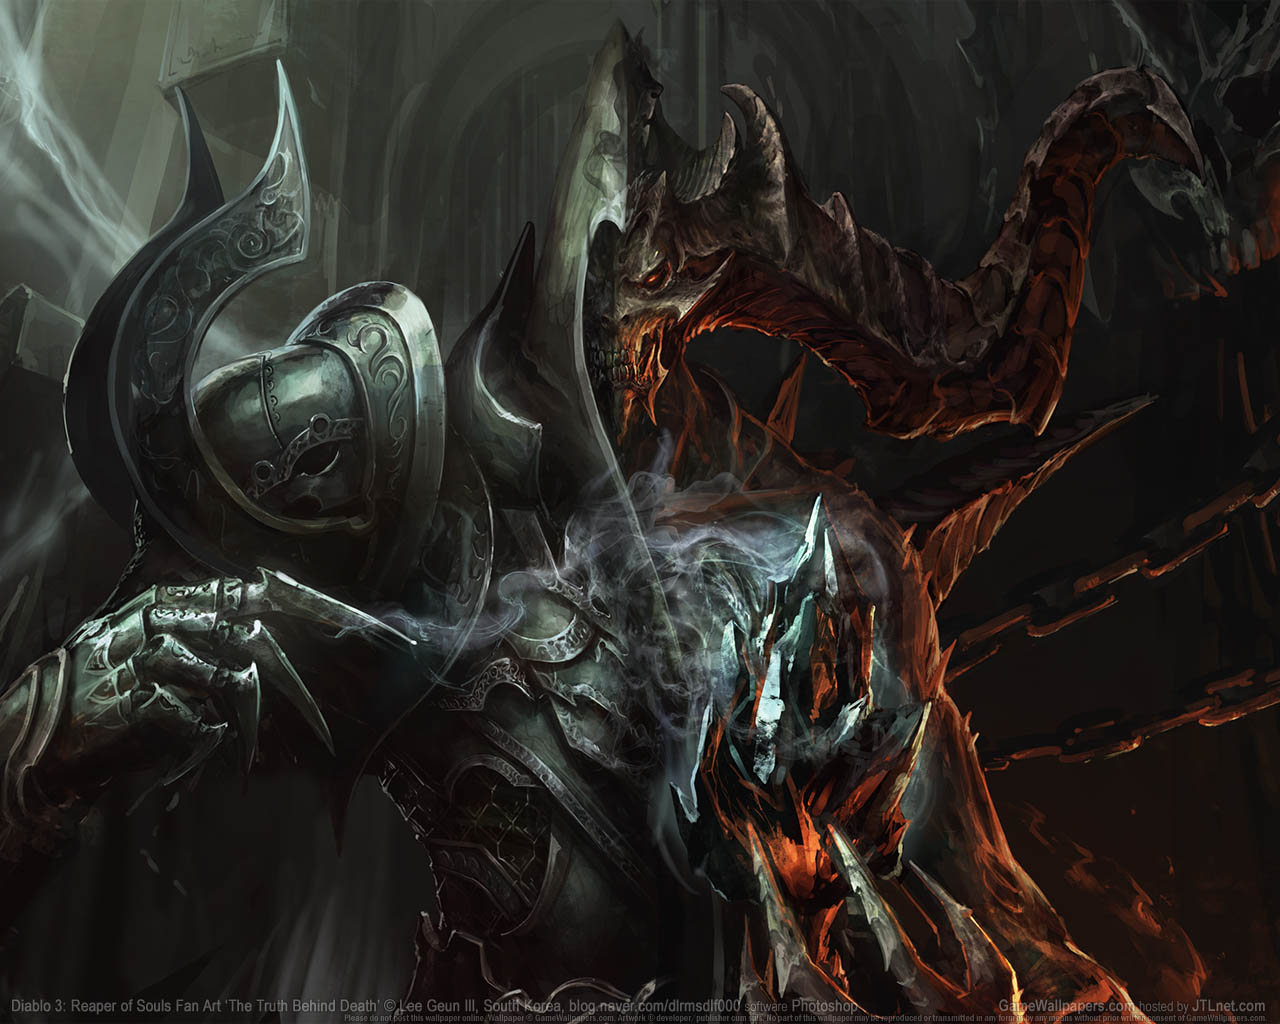 Diablo 3: Reaper of Souls Fan Artνmmer=02 fond d'cran  1280x1024